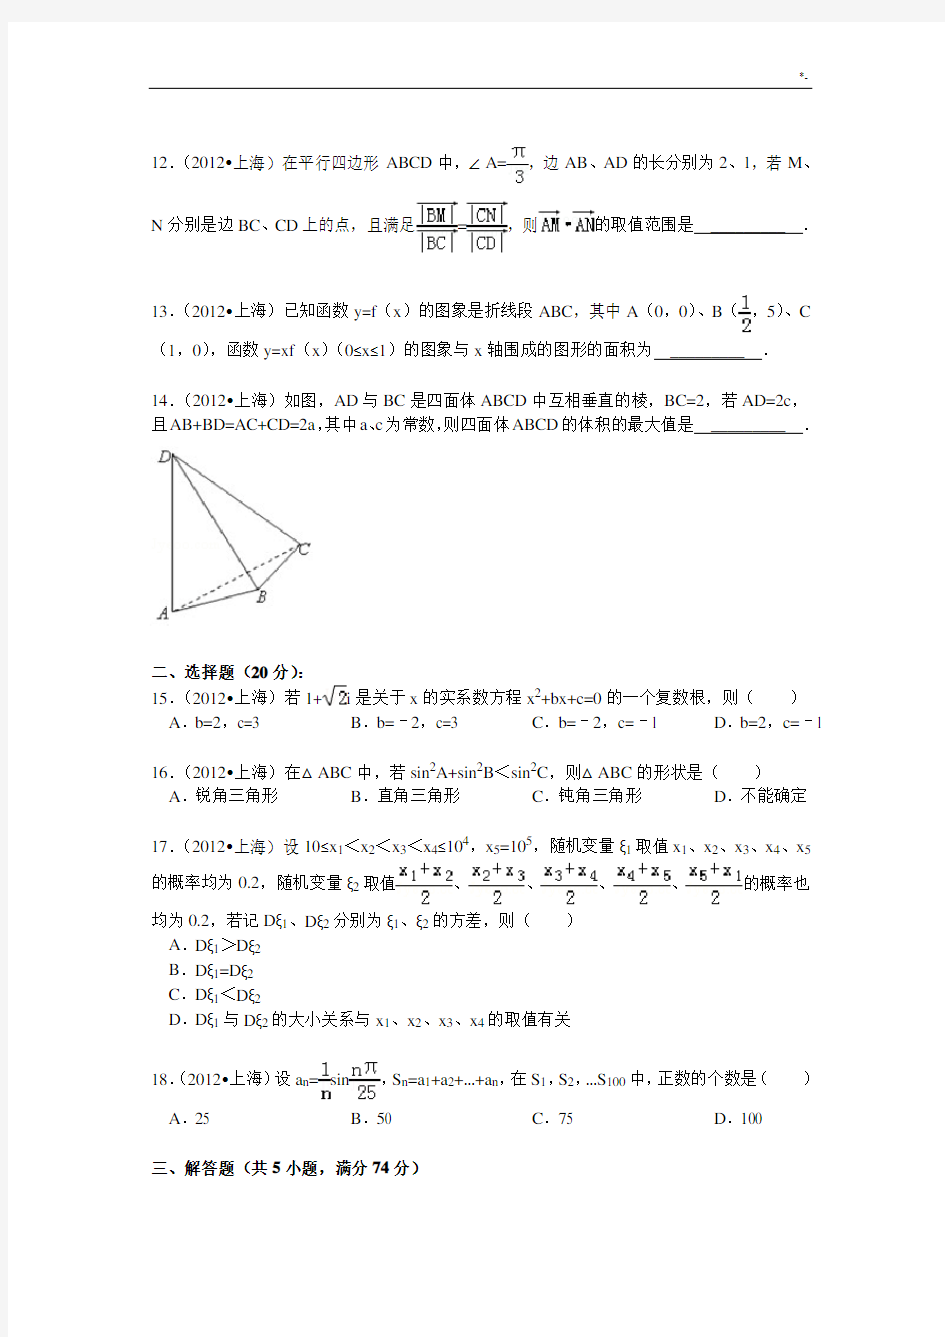 2012年上海高考理科数学试卷及其解析